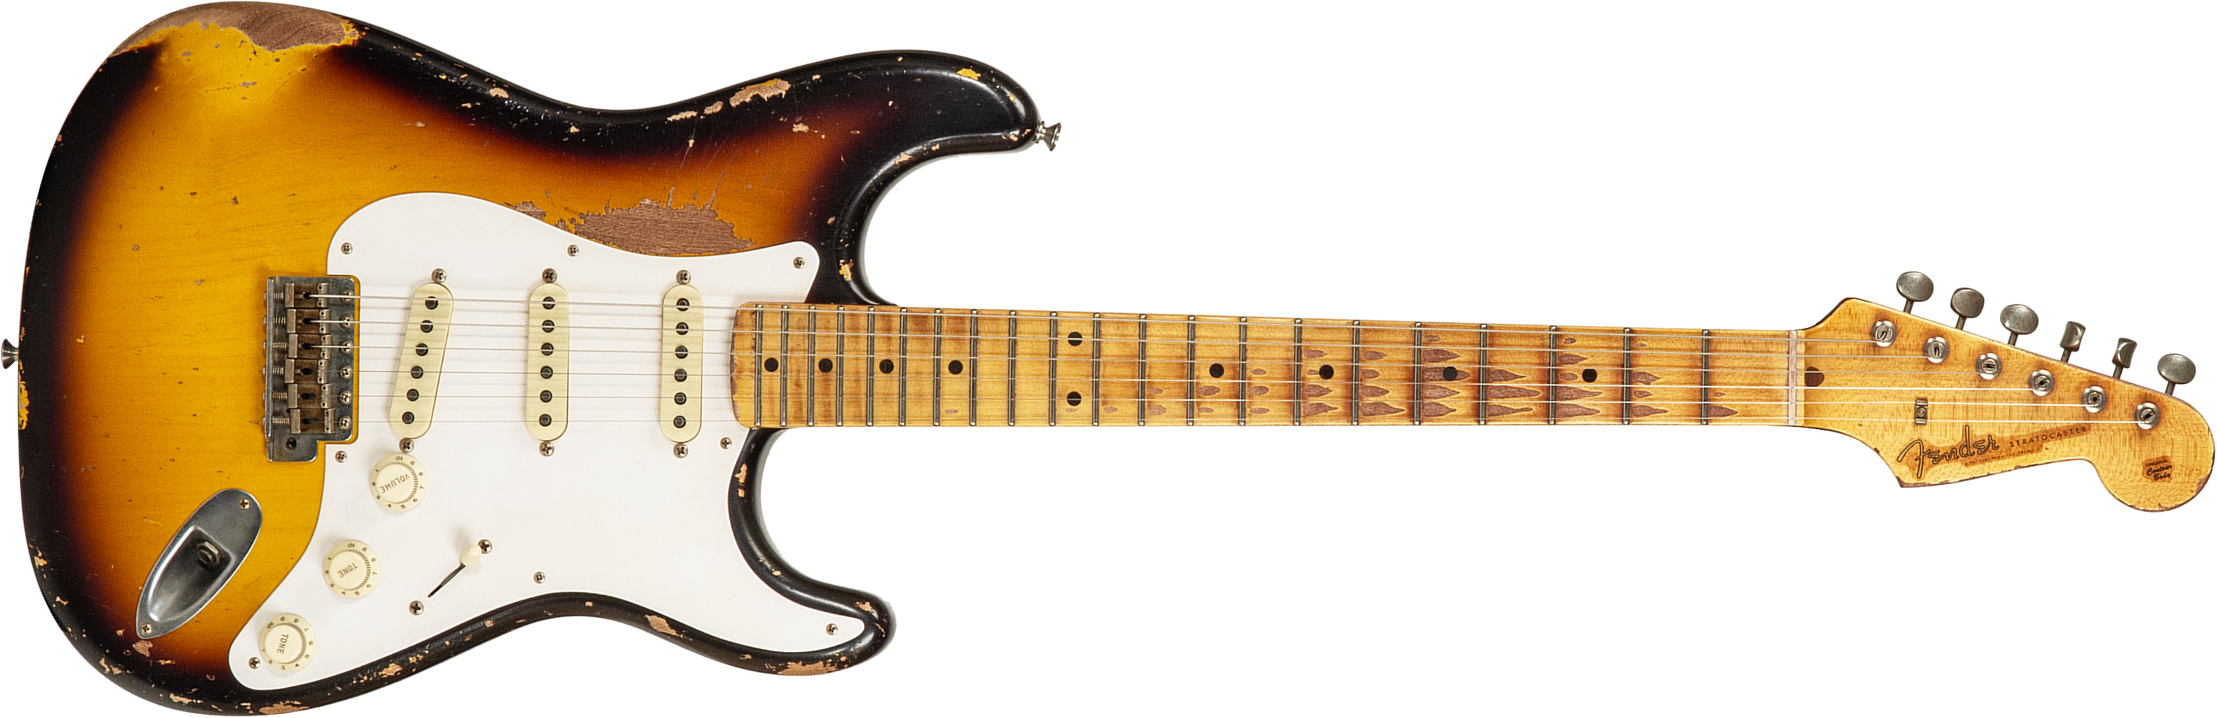 Fender Custom Shop Strat 1956 Masterbuilt K.mcmillin 3s Trem Mn #r129060 - Heavy Relic 2-color Sunburst - Guitare Électrique Forme Str - Main picture